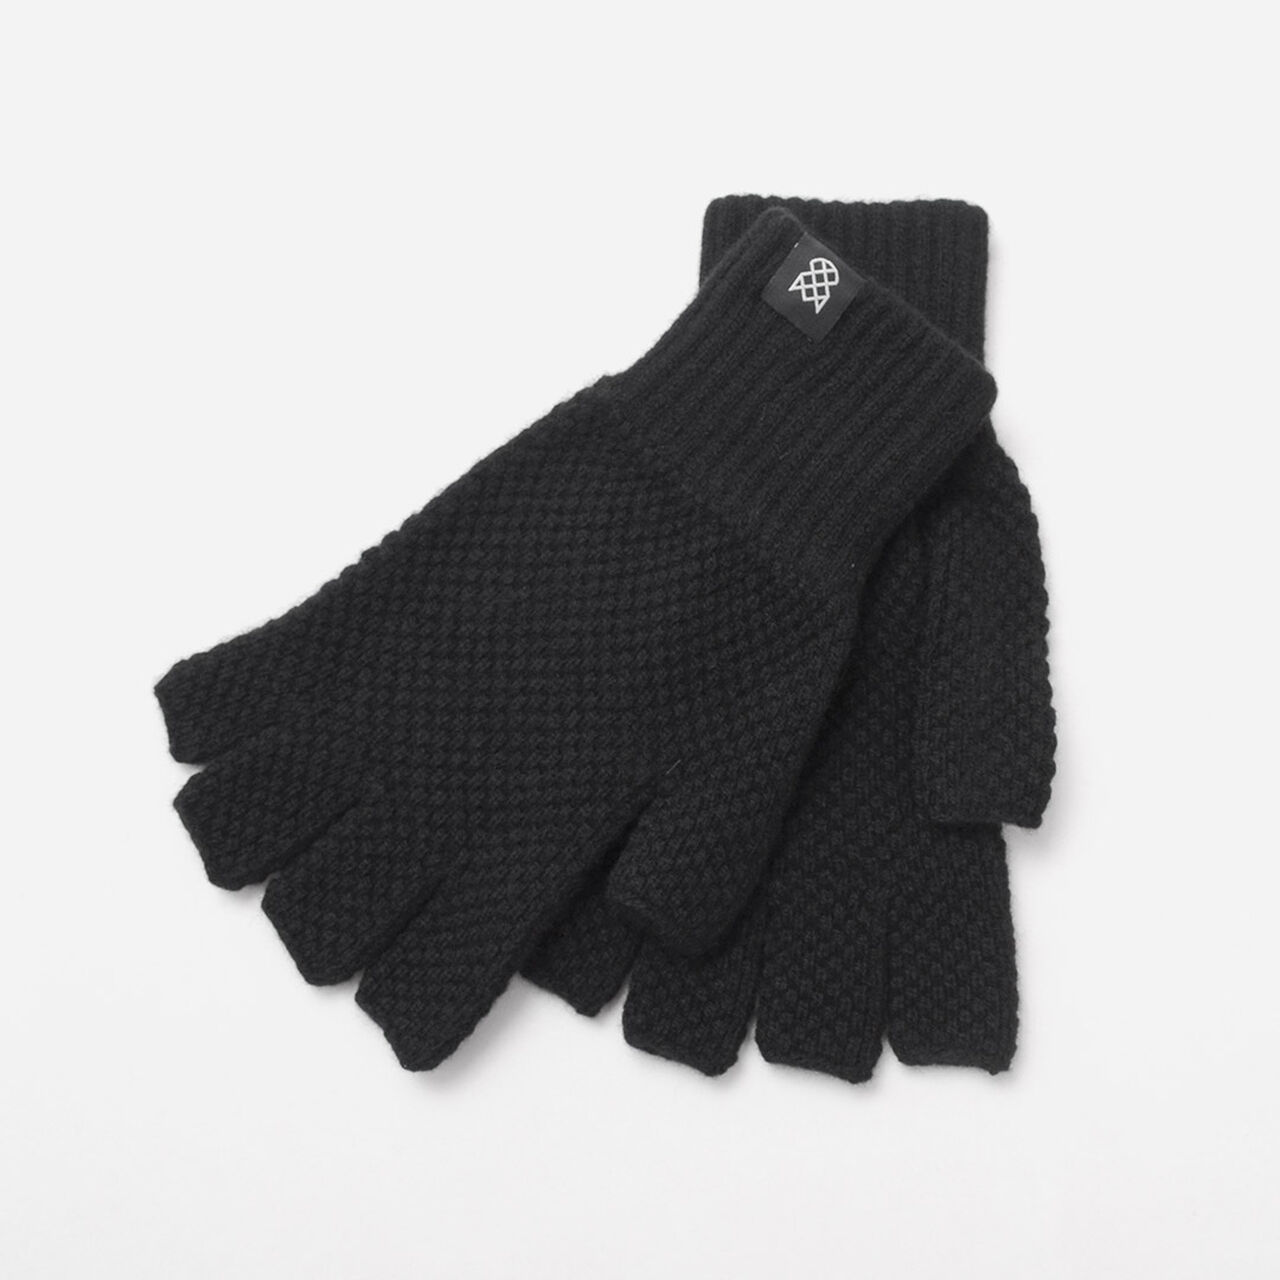 Special Order Tuck Stitch Half Finger Knit Glove,Black, large image number 0